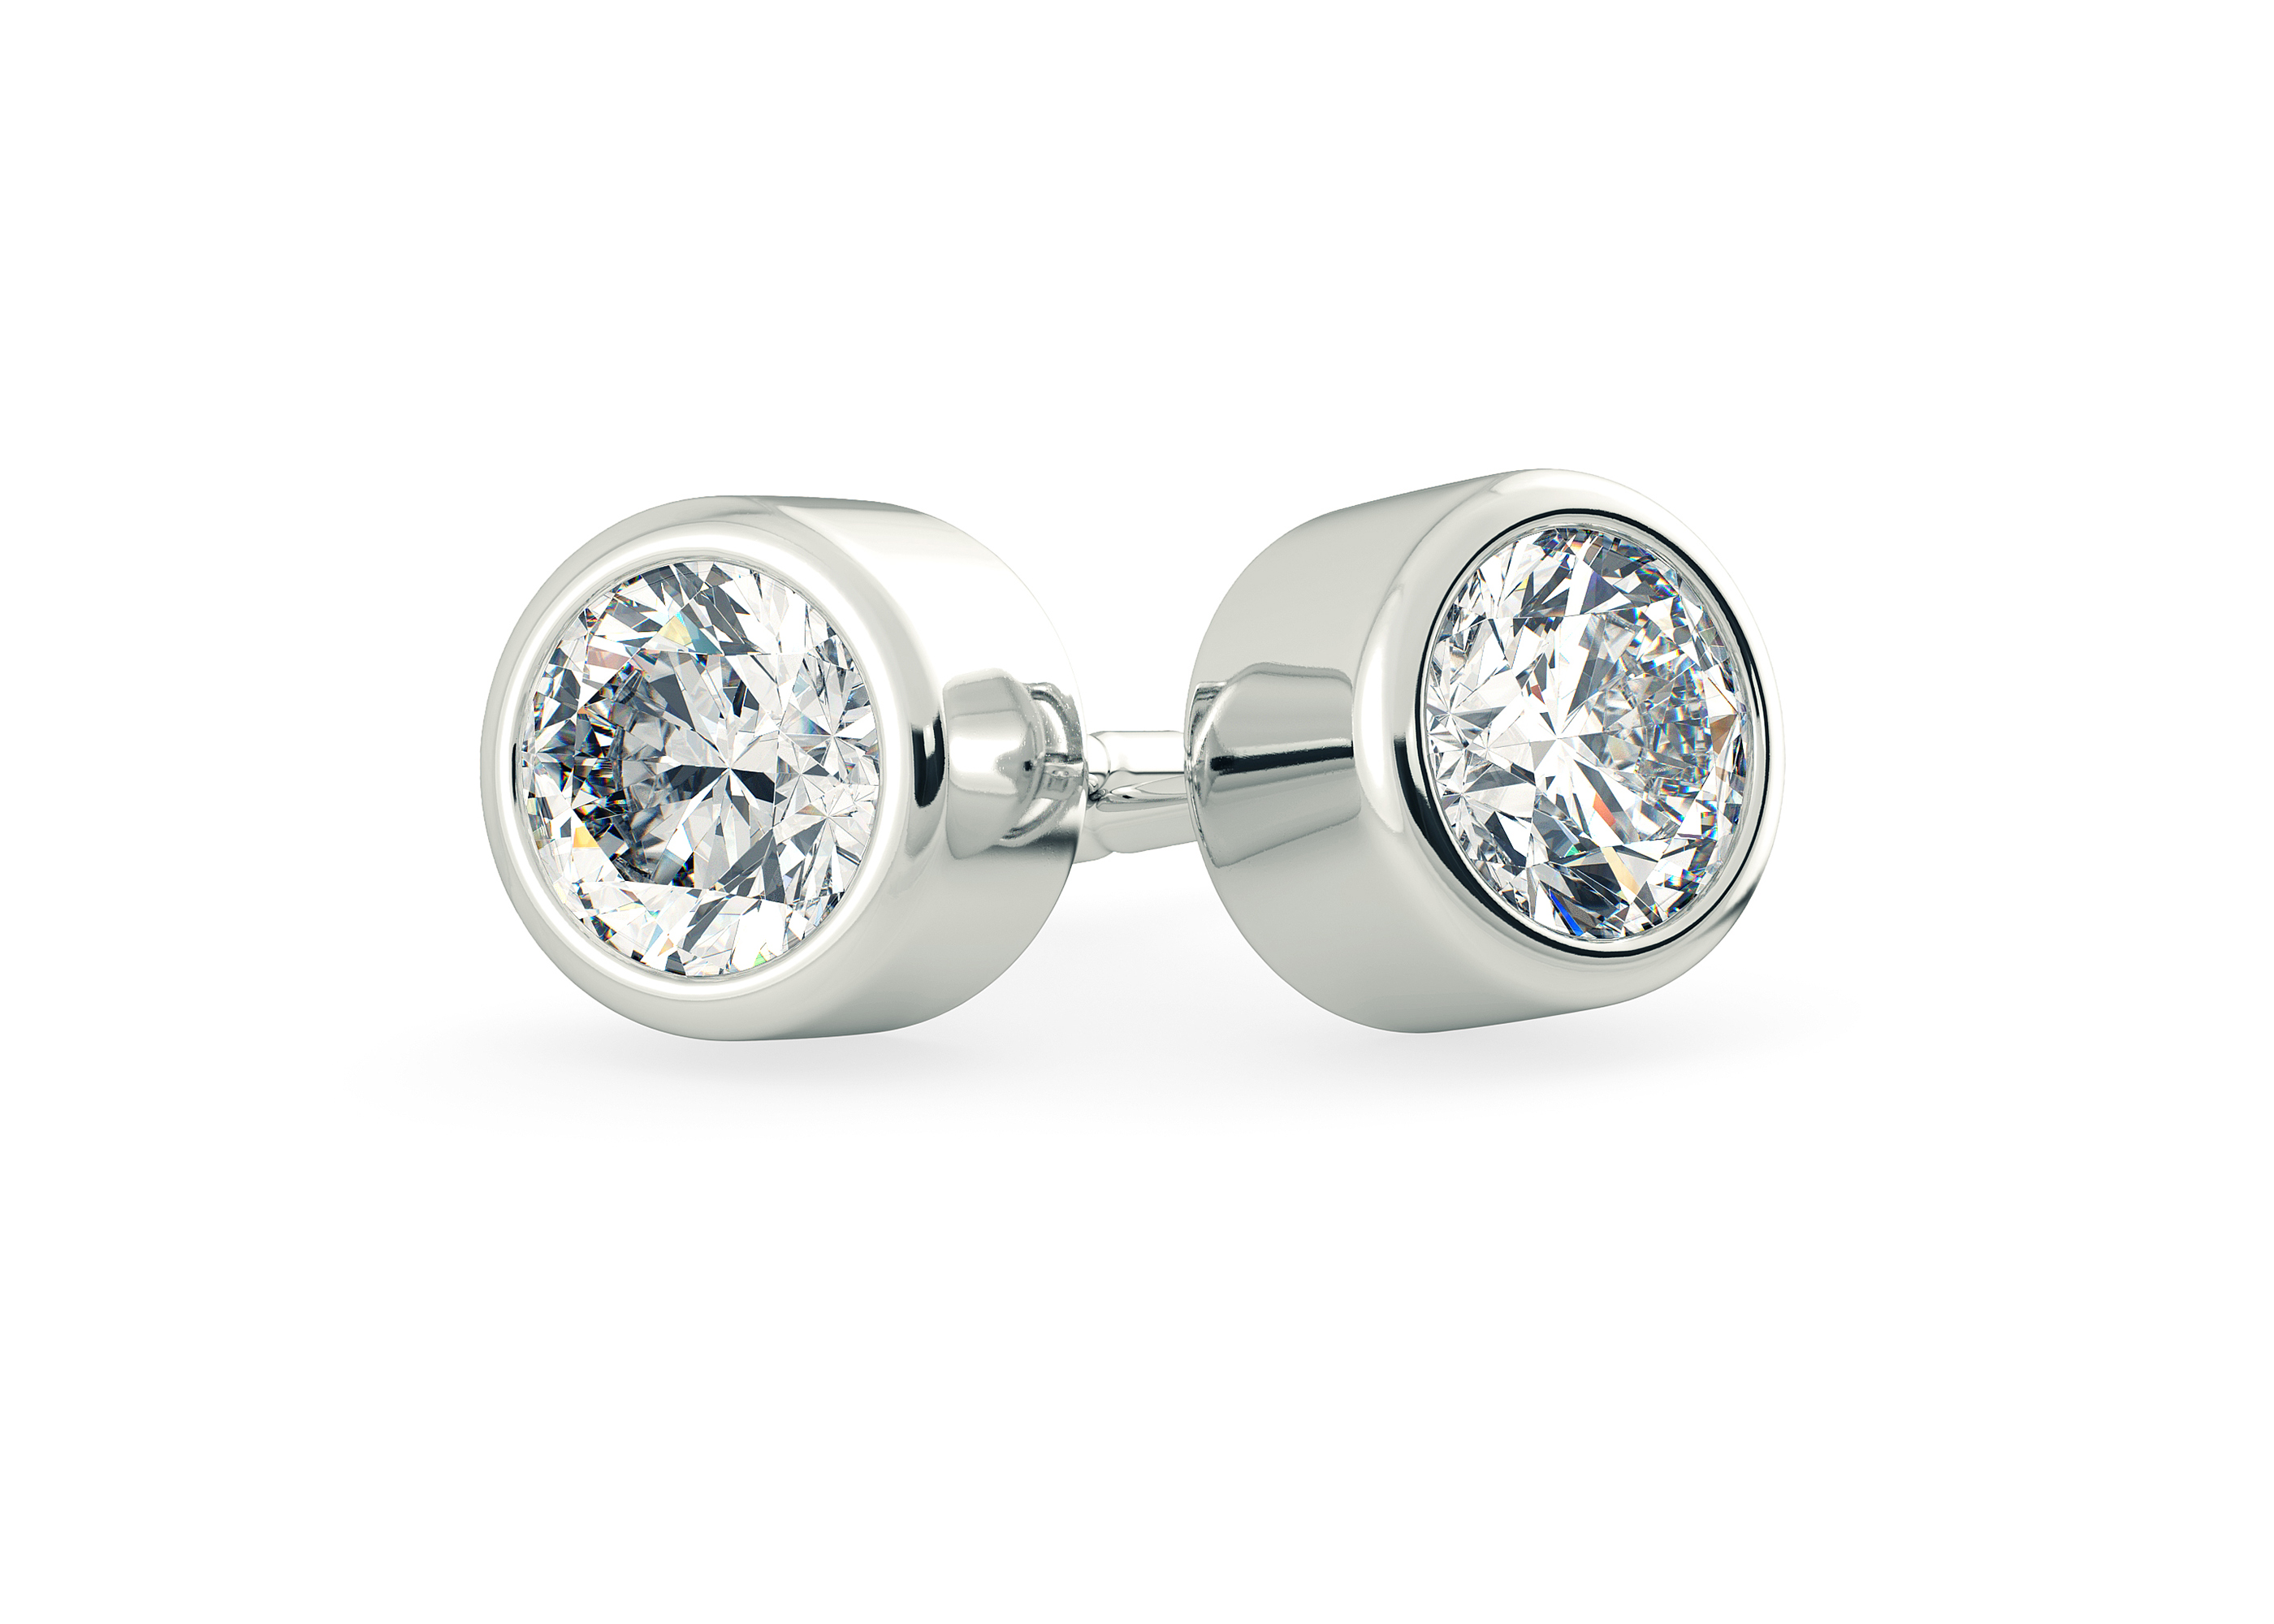 Carina Diamond Stud Earrings